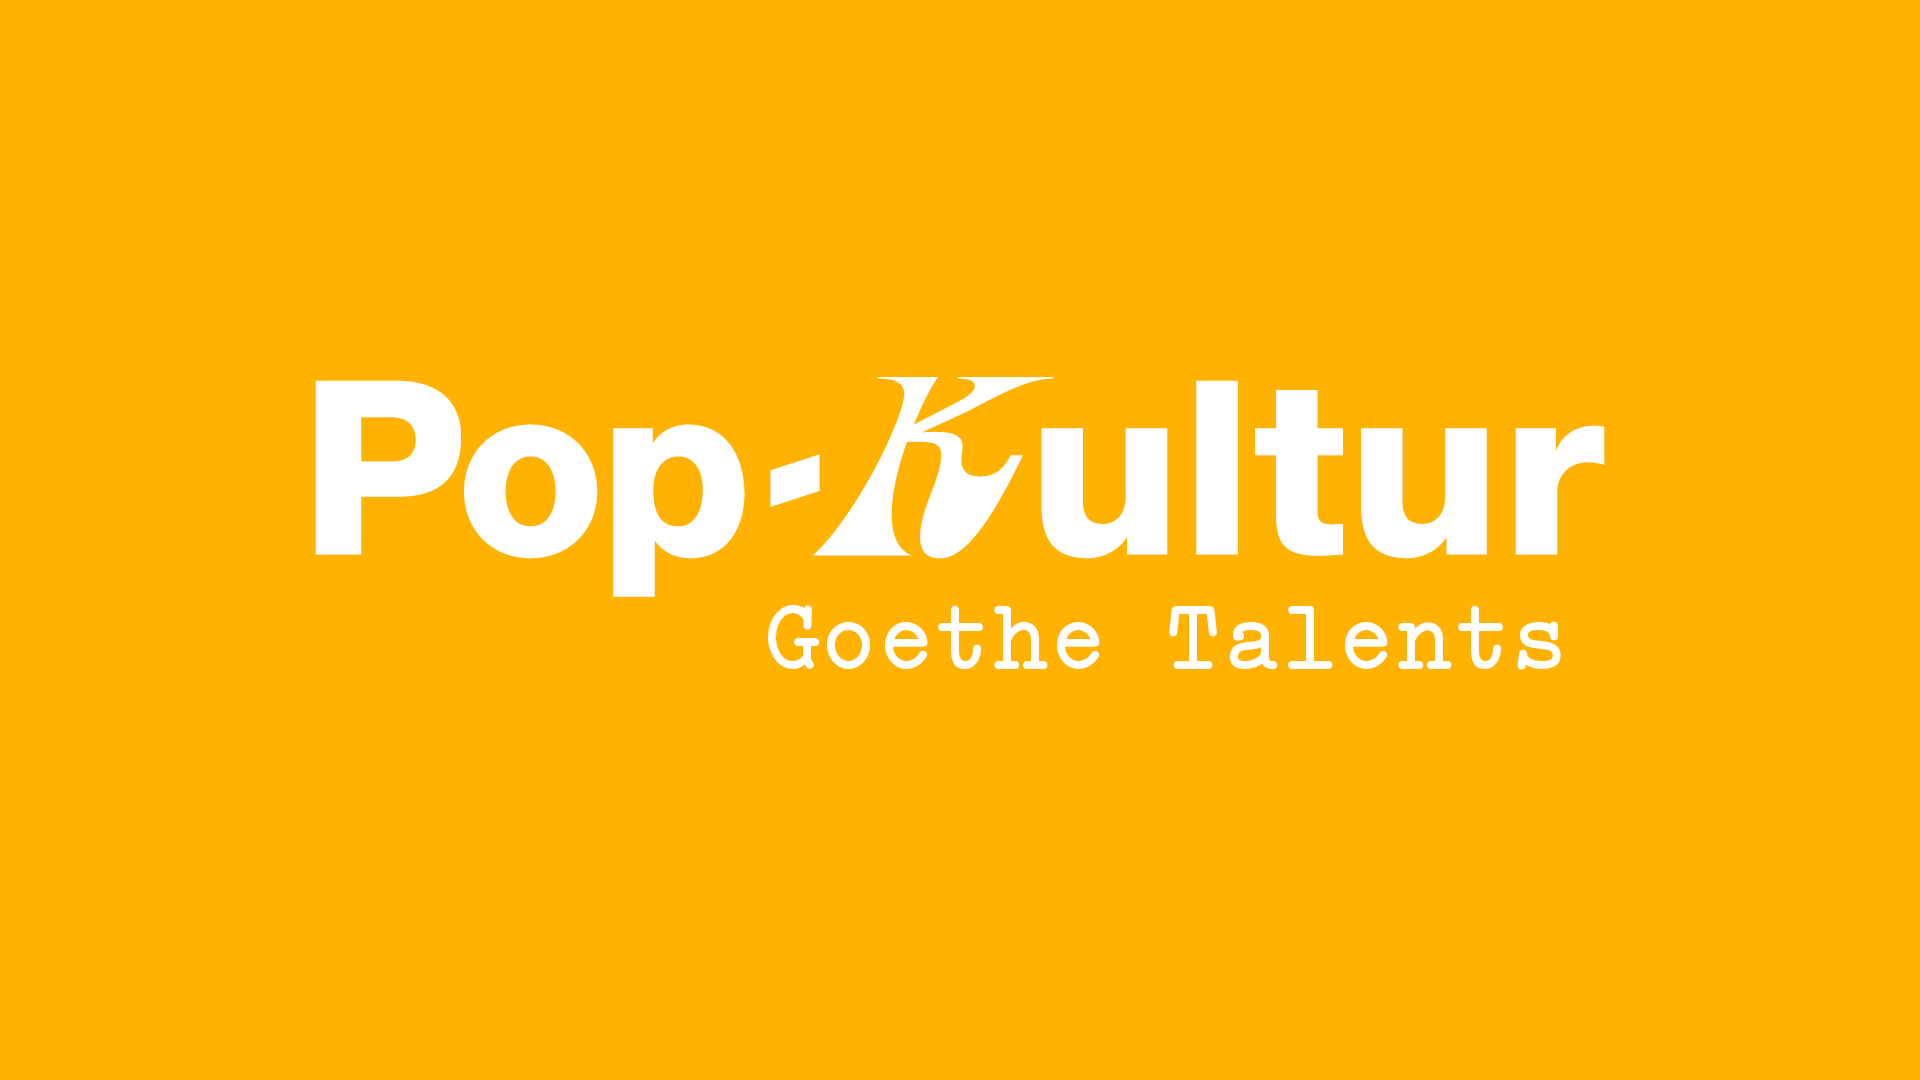 Image of Pop-Kultur Goethe Talents logo